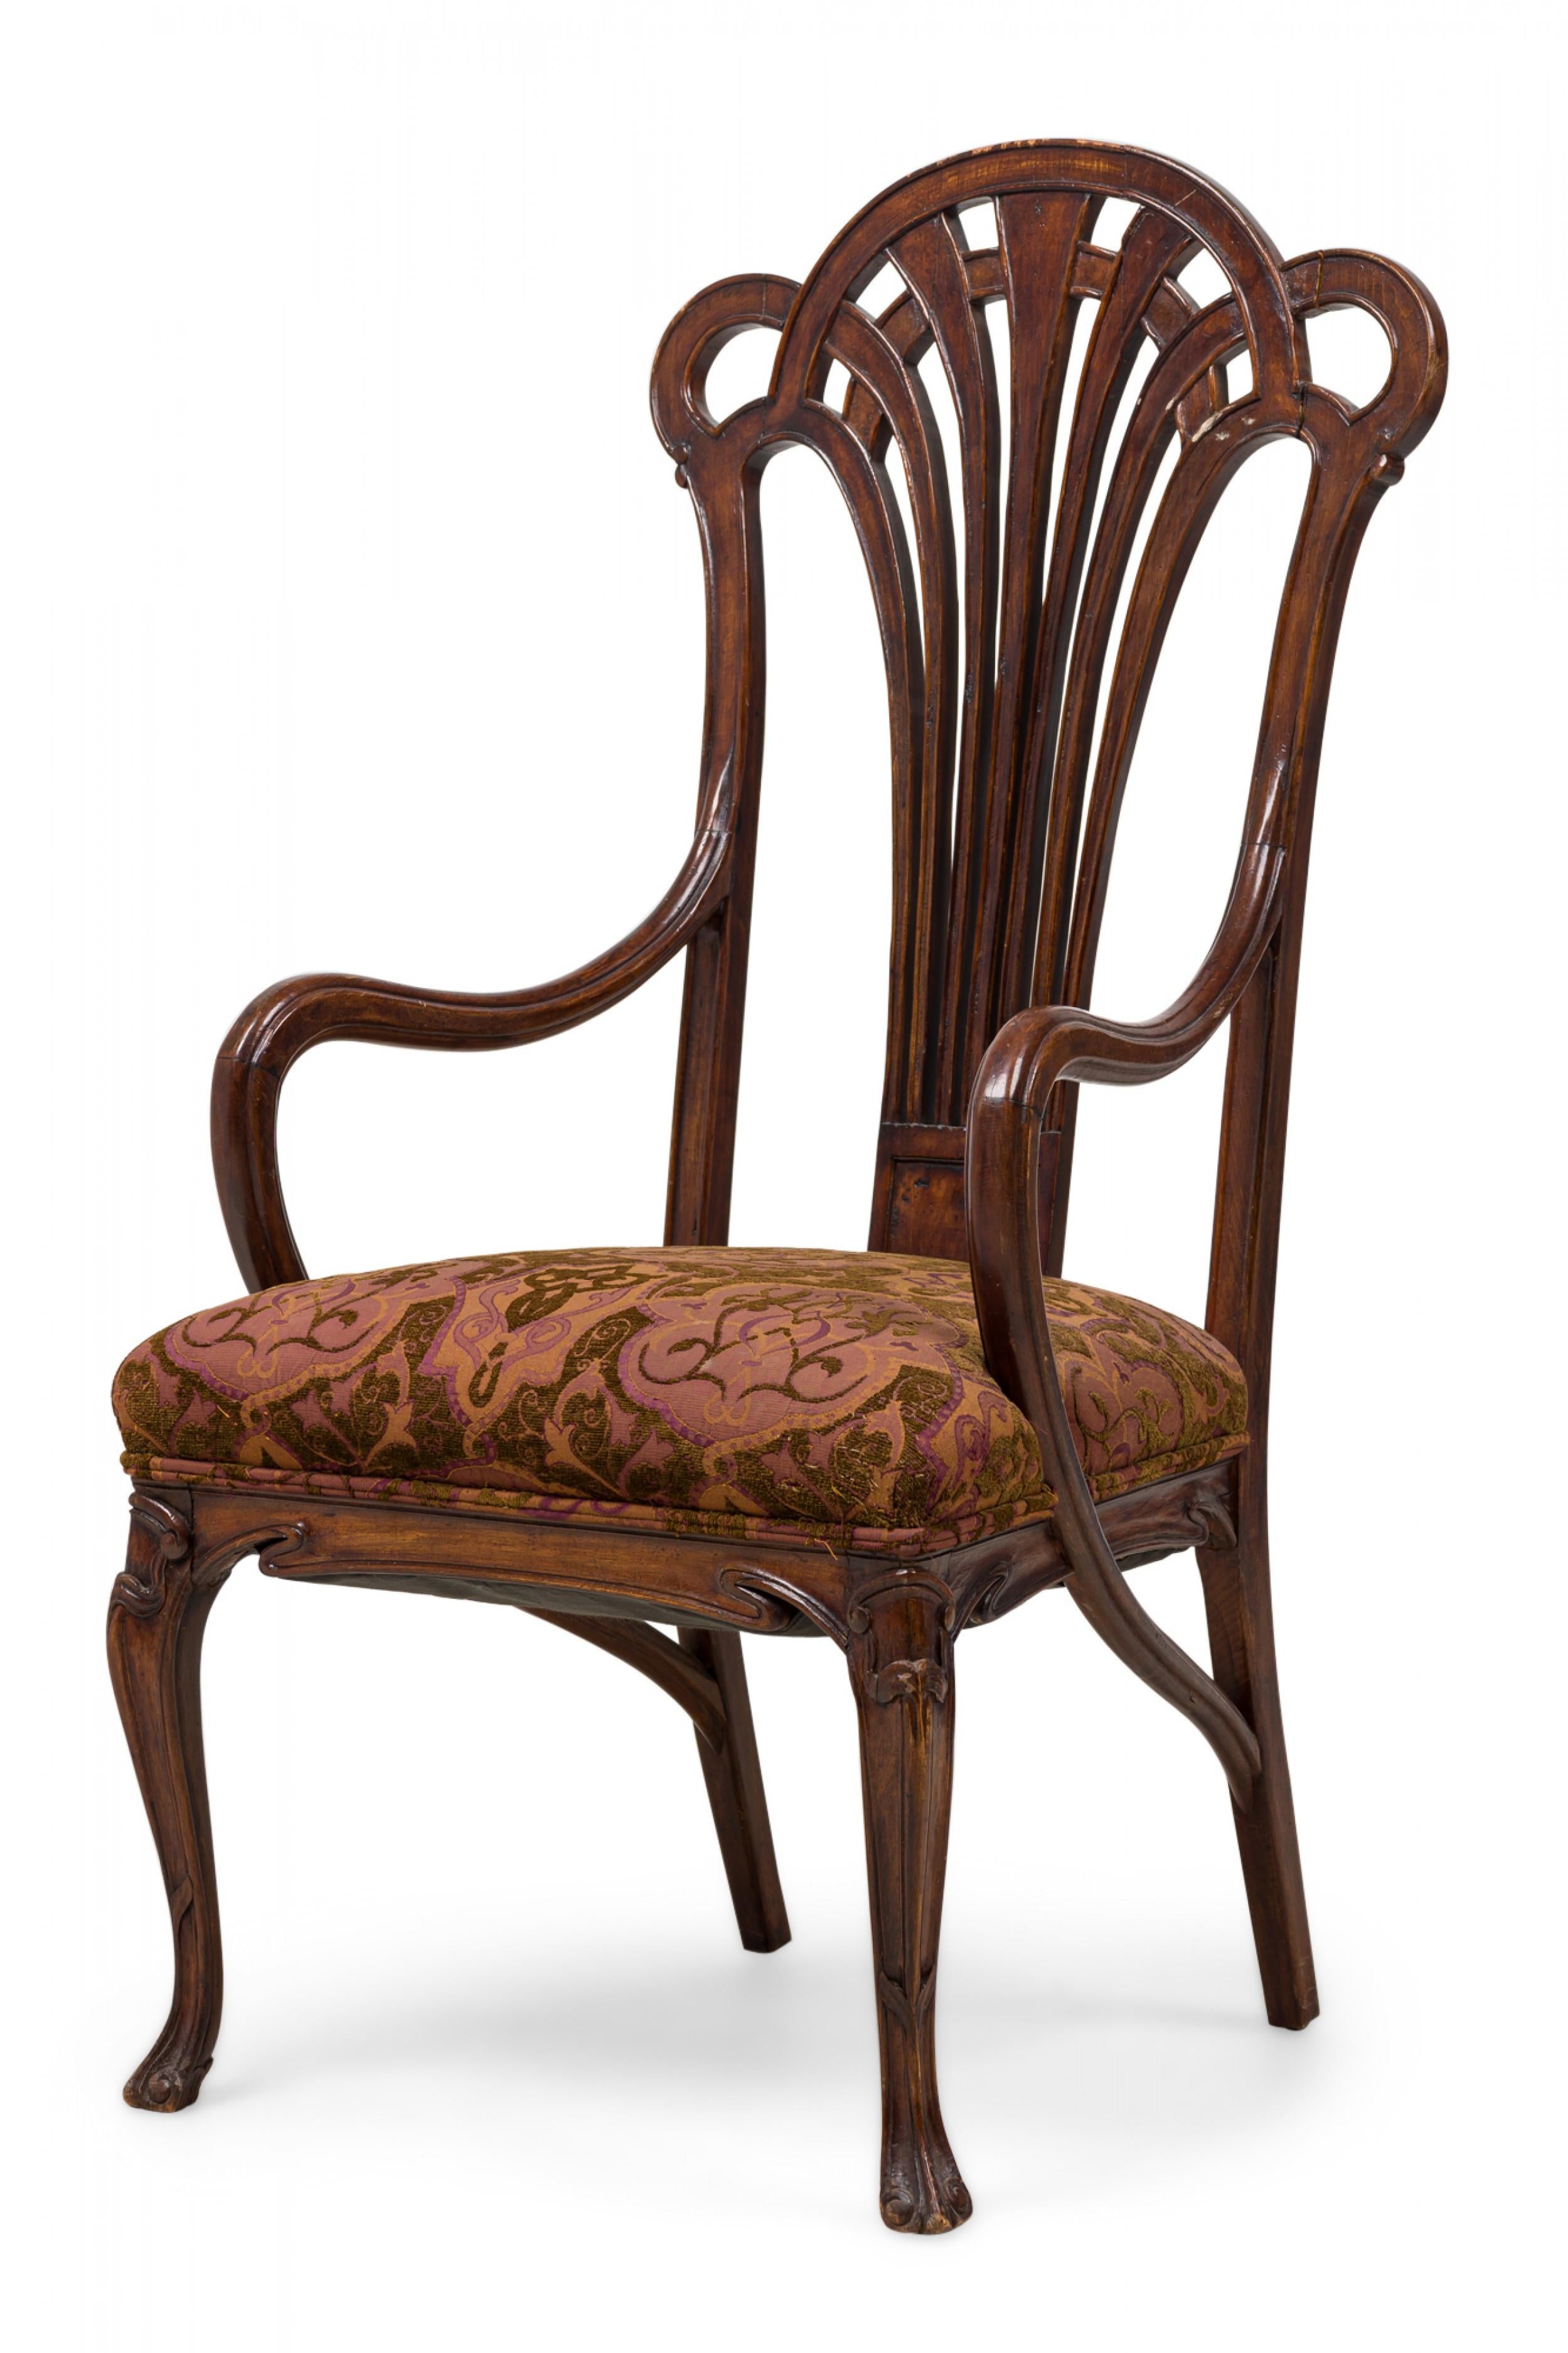 Jugendstil-Sessel aus französischem Mahagoni mit einer durchbrochenen Fächerform, die mit geschwungenen, skulpturalen Armlehnen verbunden ist. Der Sitz ist mit einem strukturierten, erdfarbenen und malvenfarbenen, blattartig gemusterten Stoff